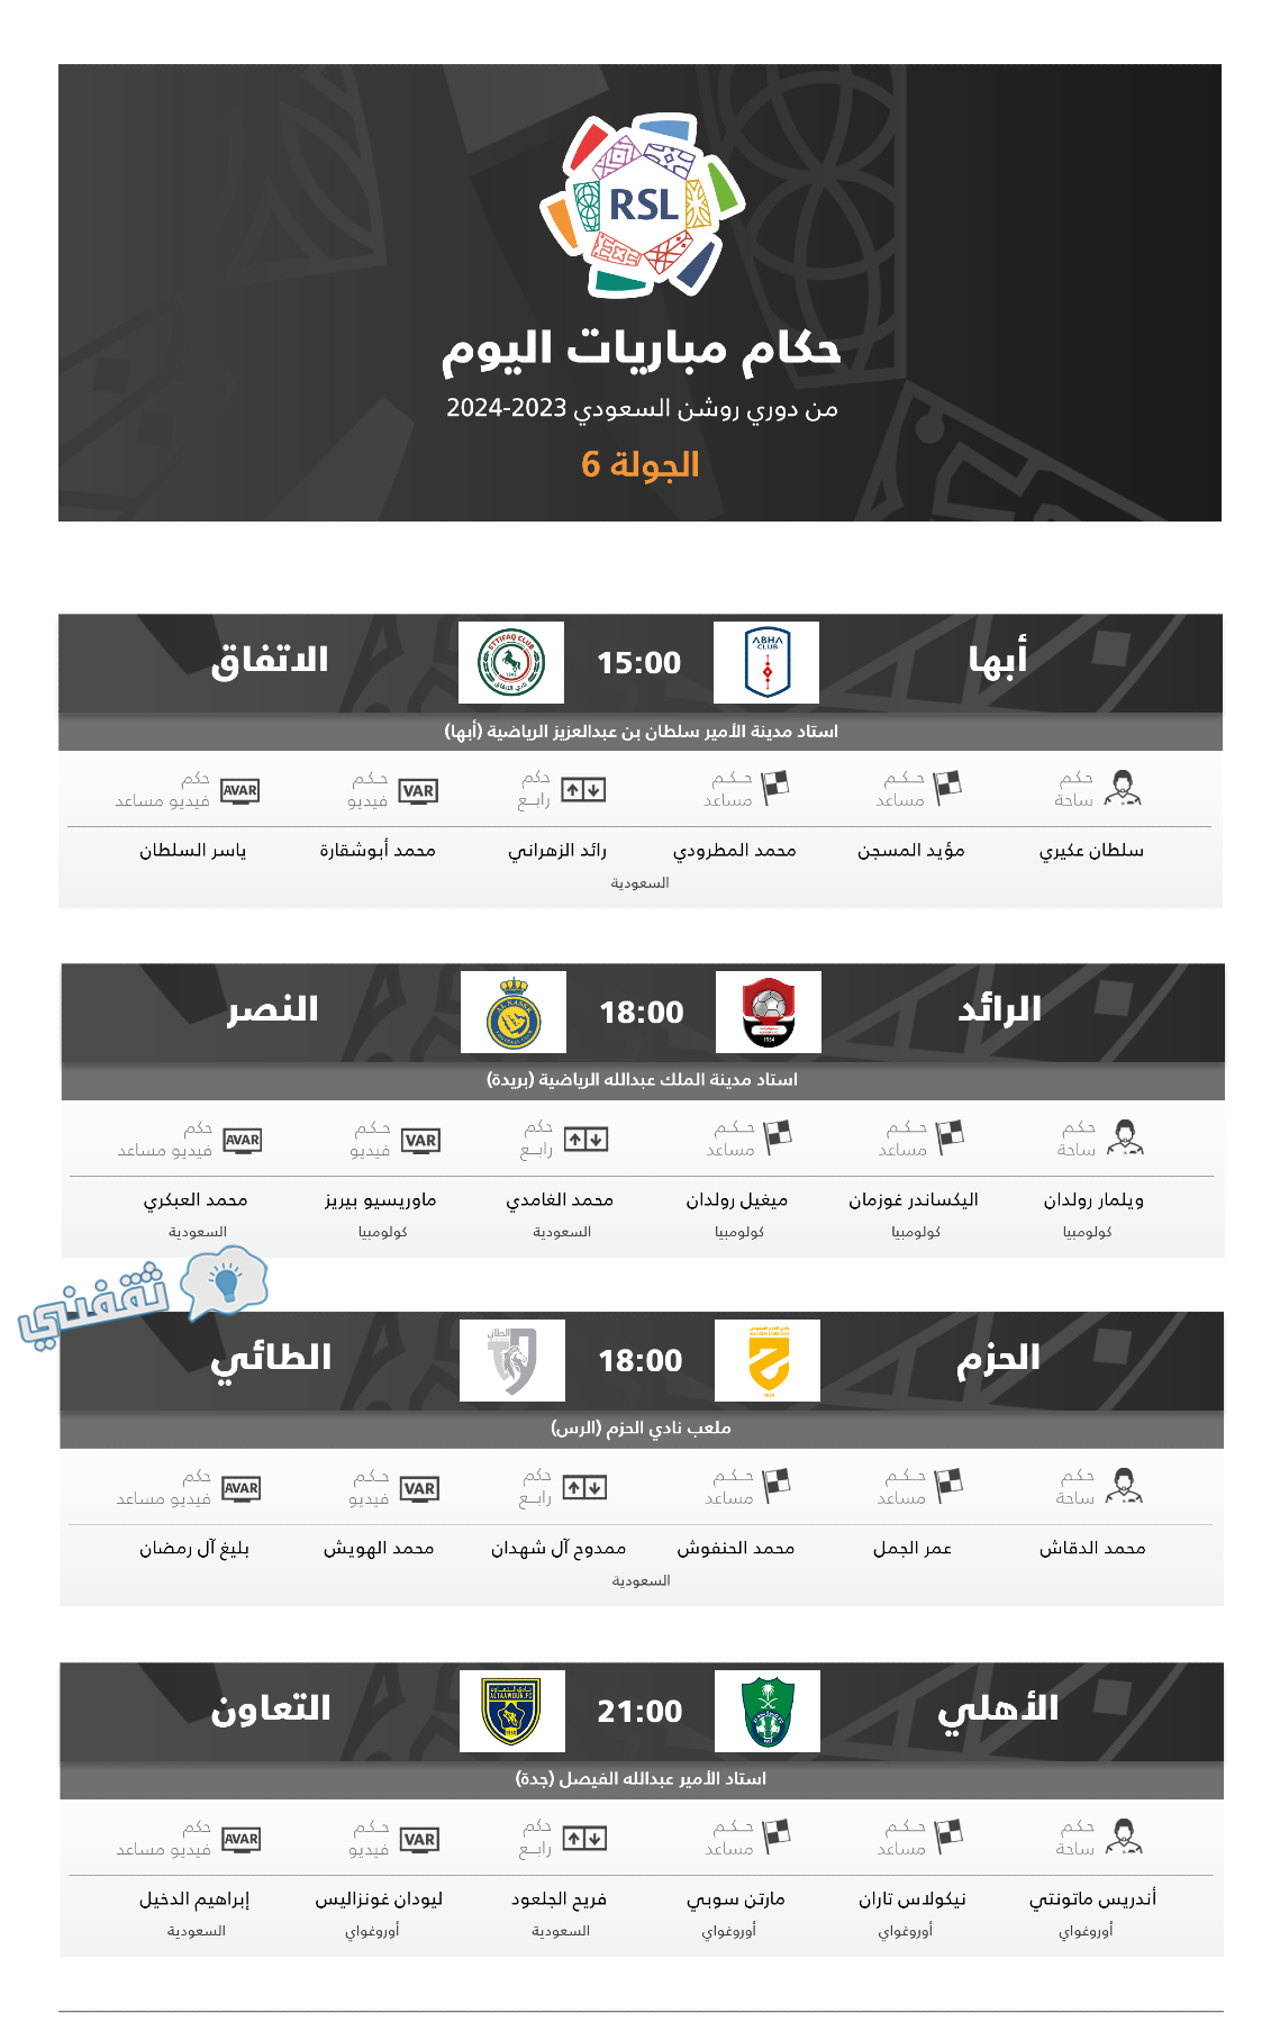 طاقم حكام مباريات اليوم السبت الختامي عن الجولة السادسة في دوري روشن السعودي للمحترفين موسم 2023_2024 (مصدر الصورة. حساب اتحاد الكرة على تويتر)